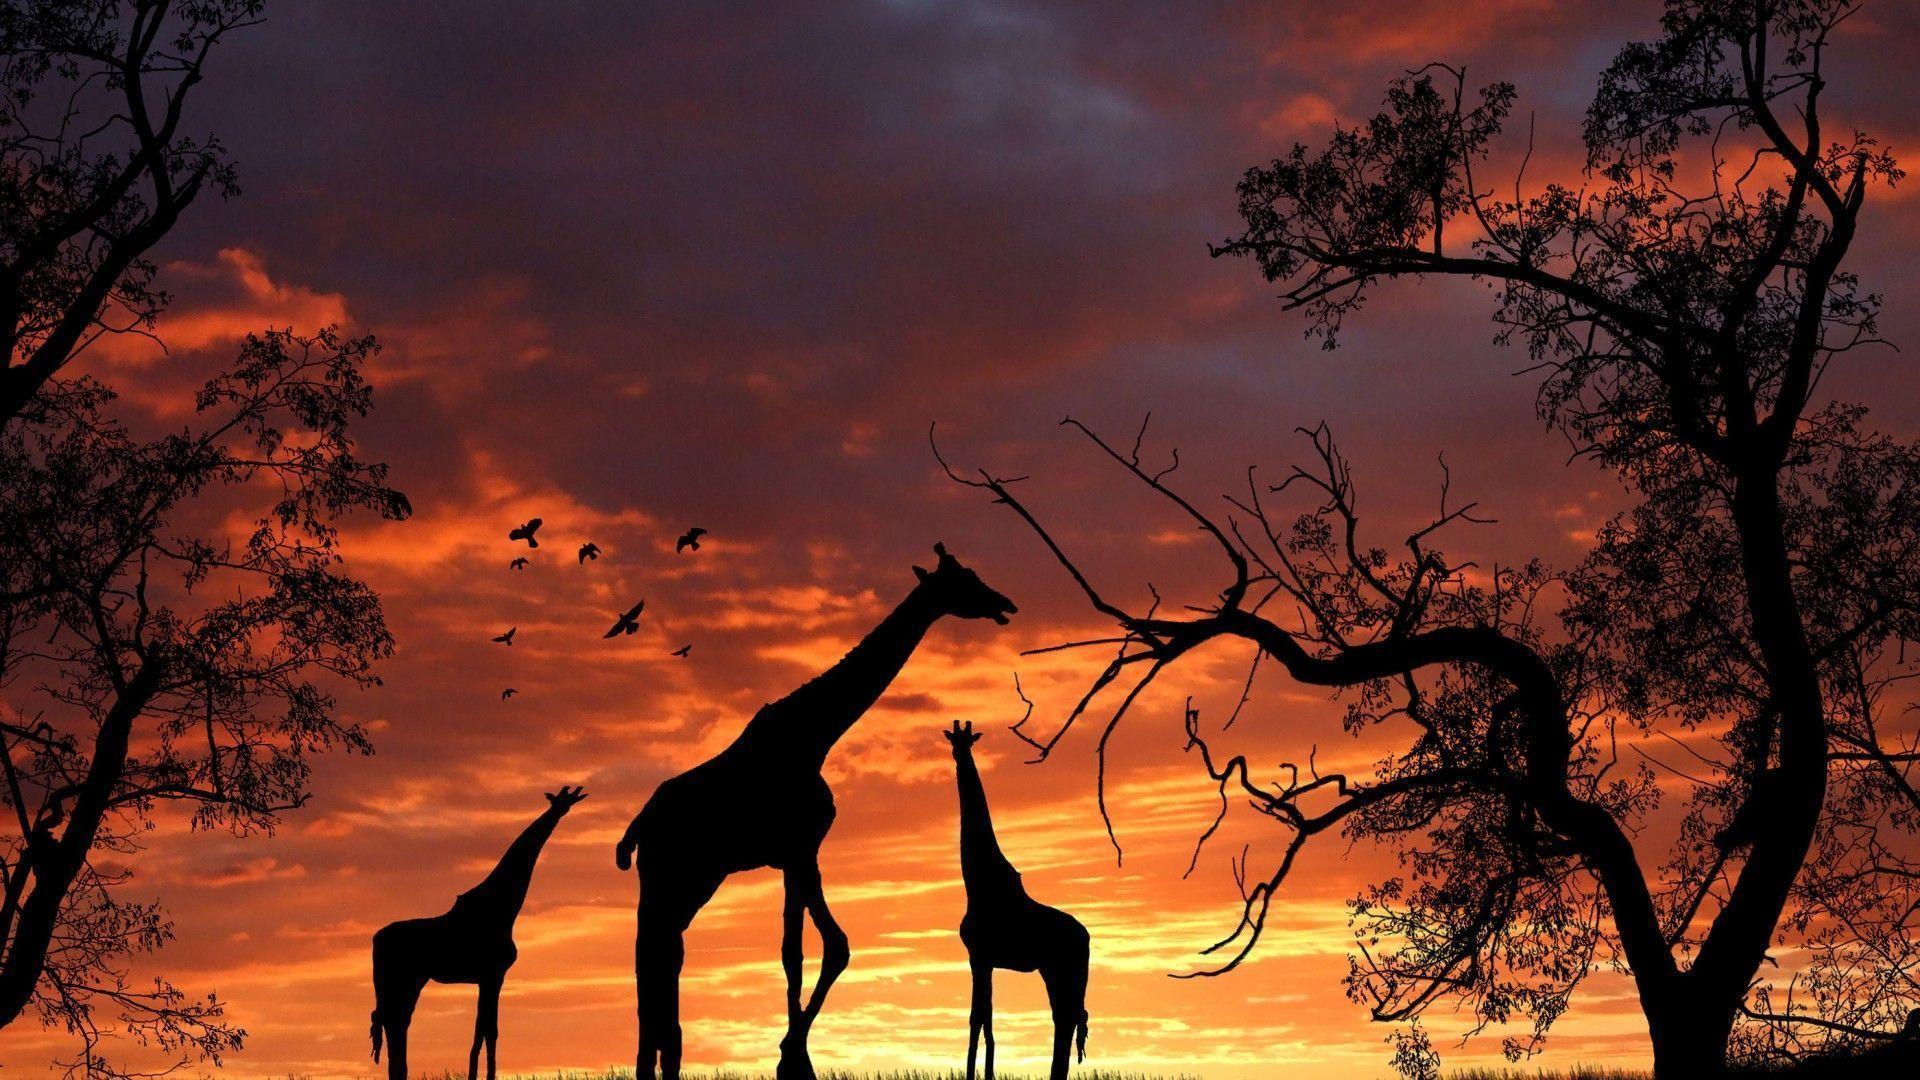 Giraffe desktop backgrounds